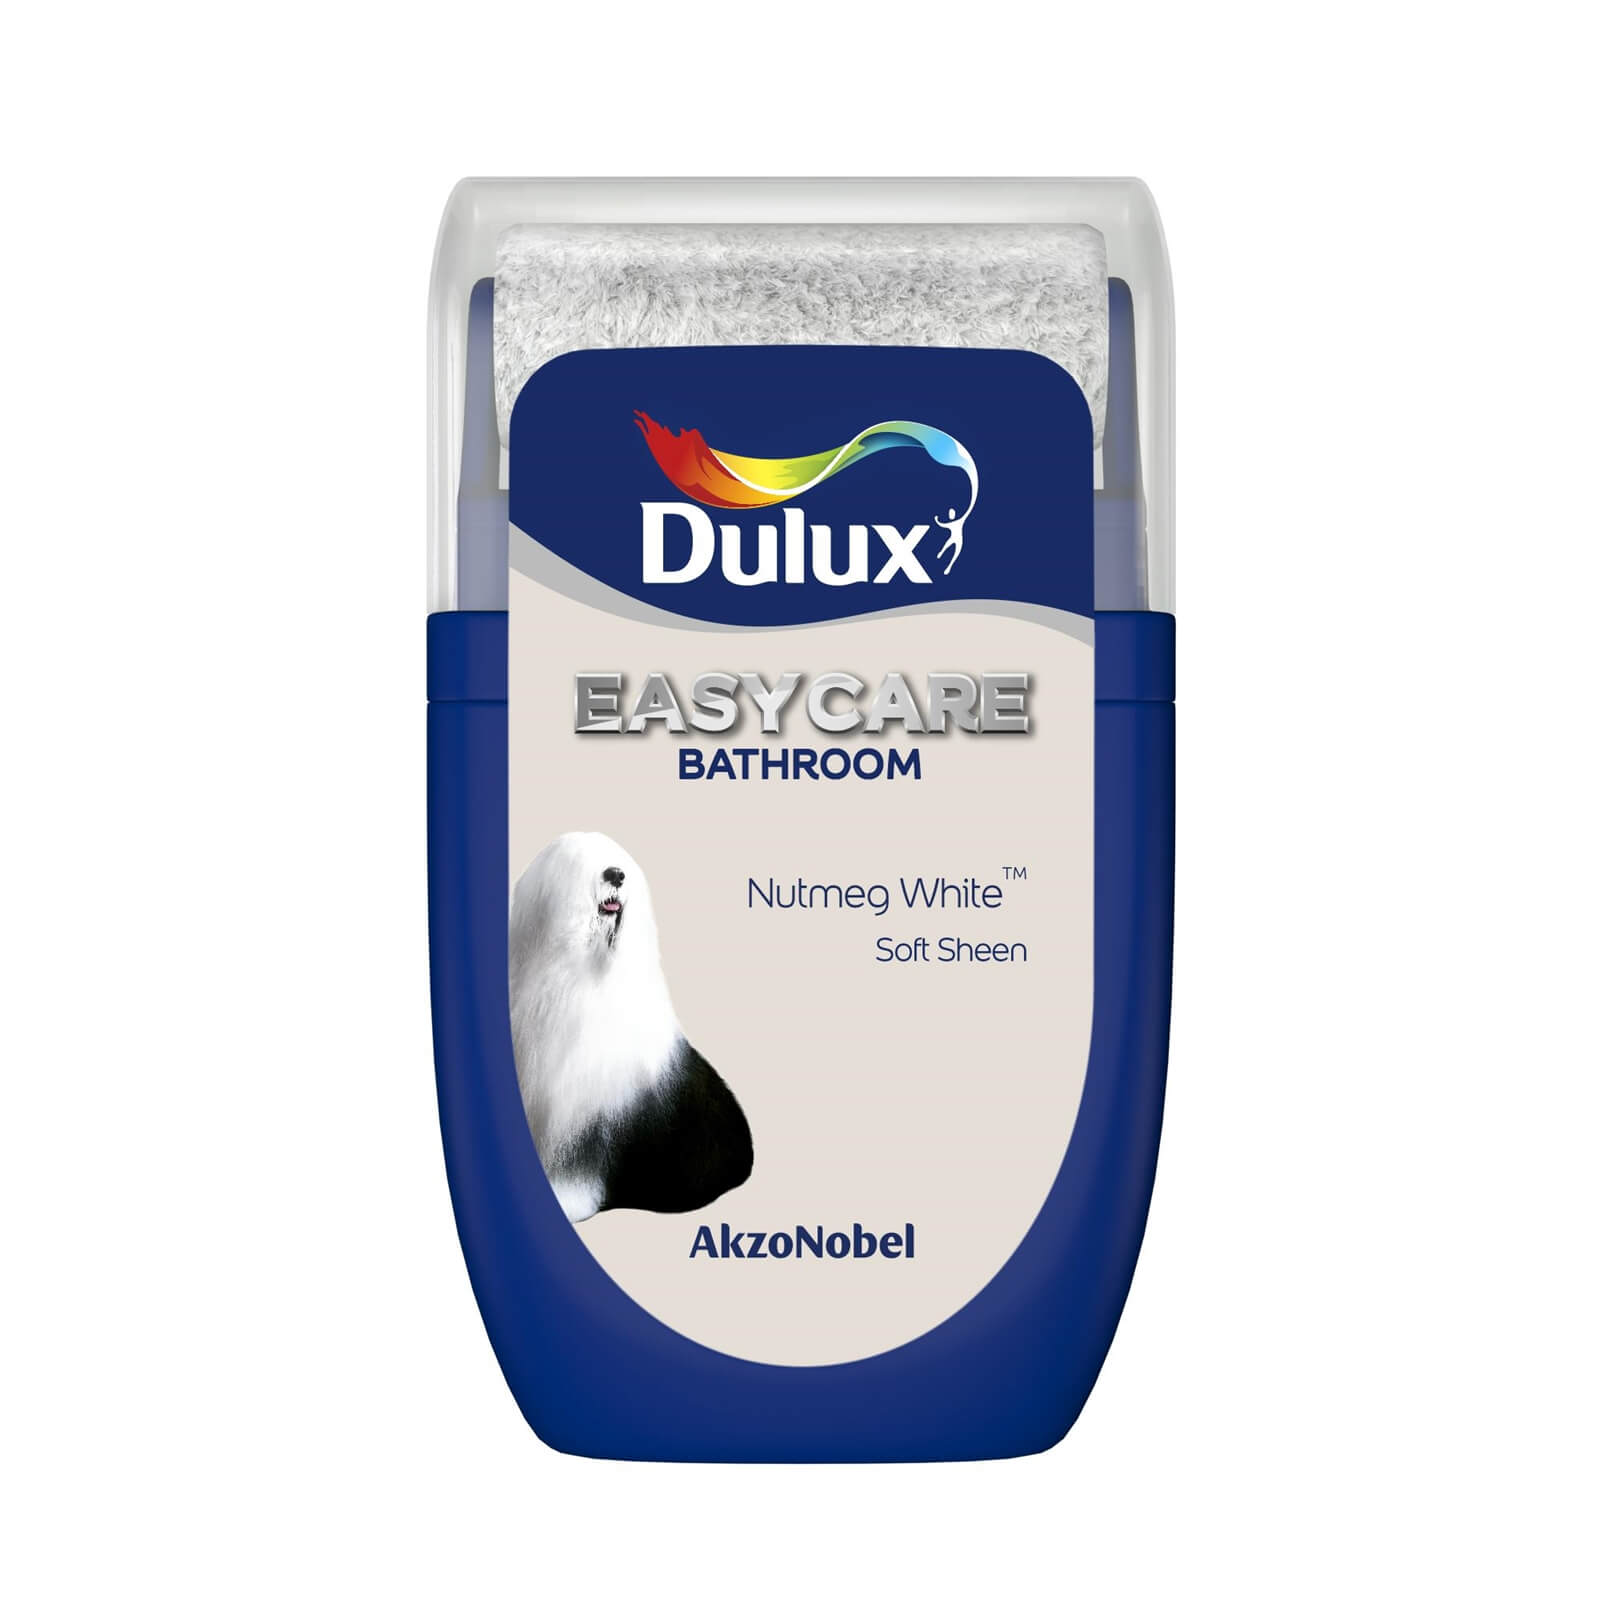 Dulux Easycare Bathroom Nutmeg White Tester Paint - 30ml